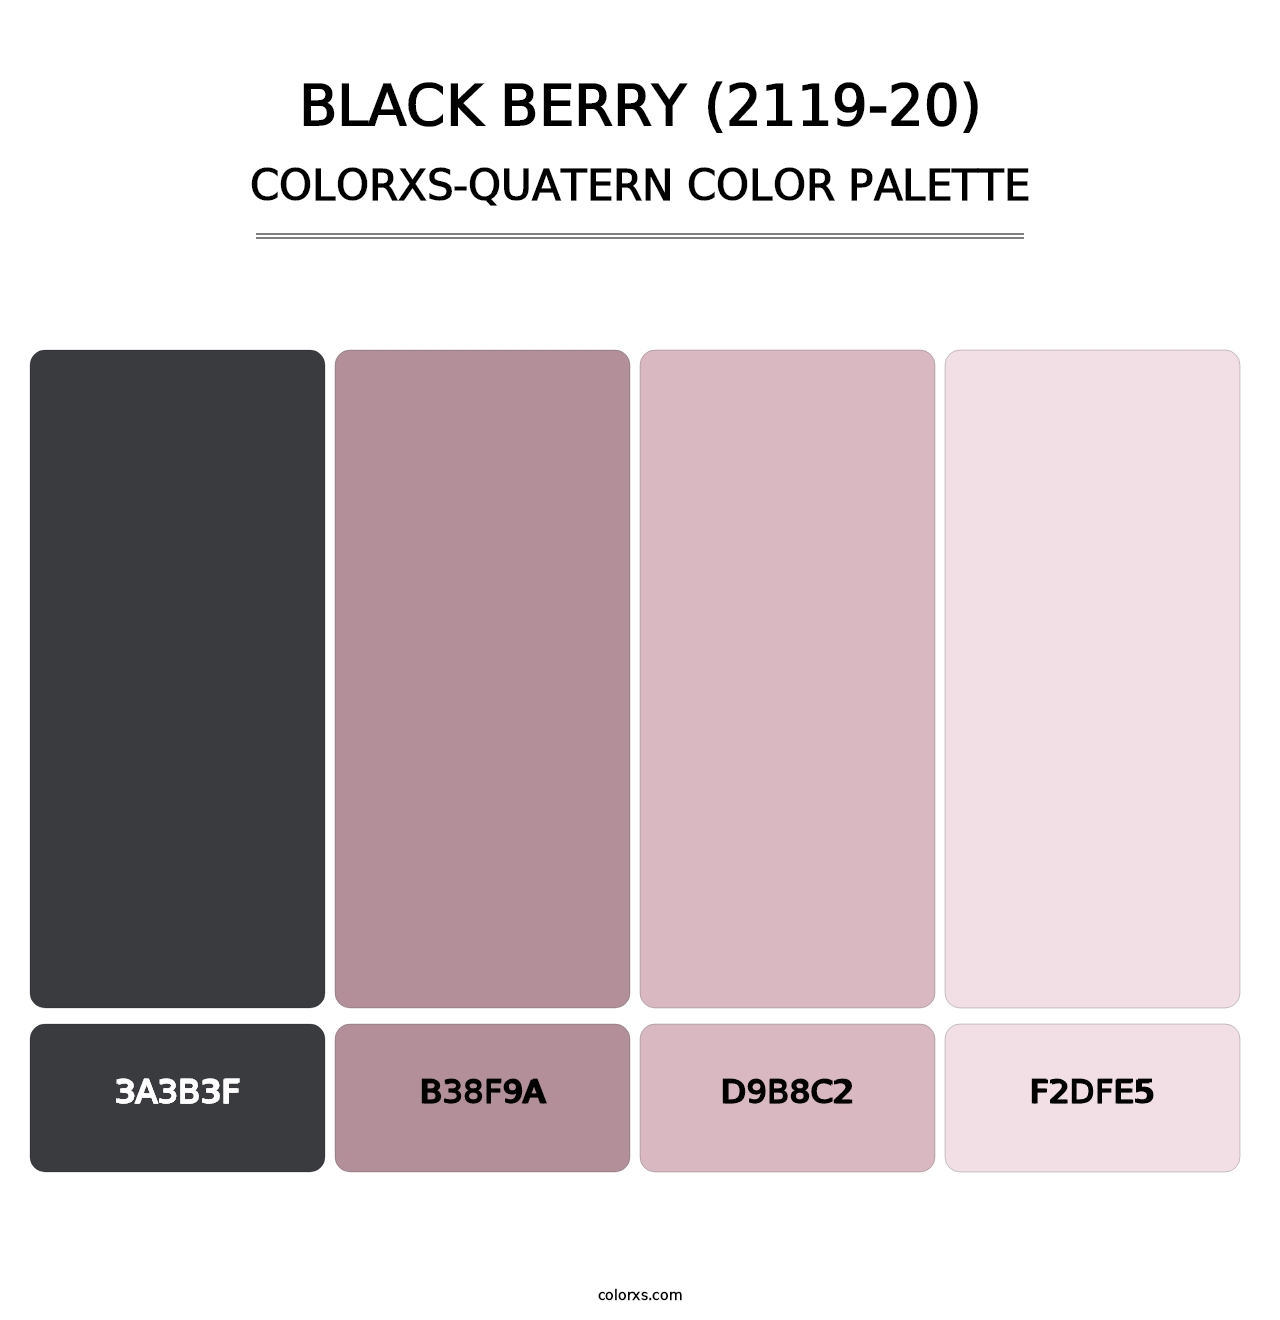 Black Berry (2119-20) - Colorxs Quatern Palette